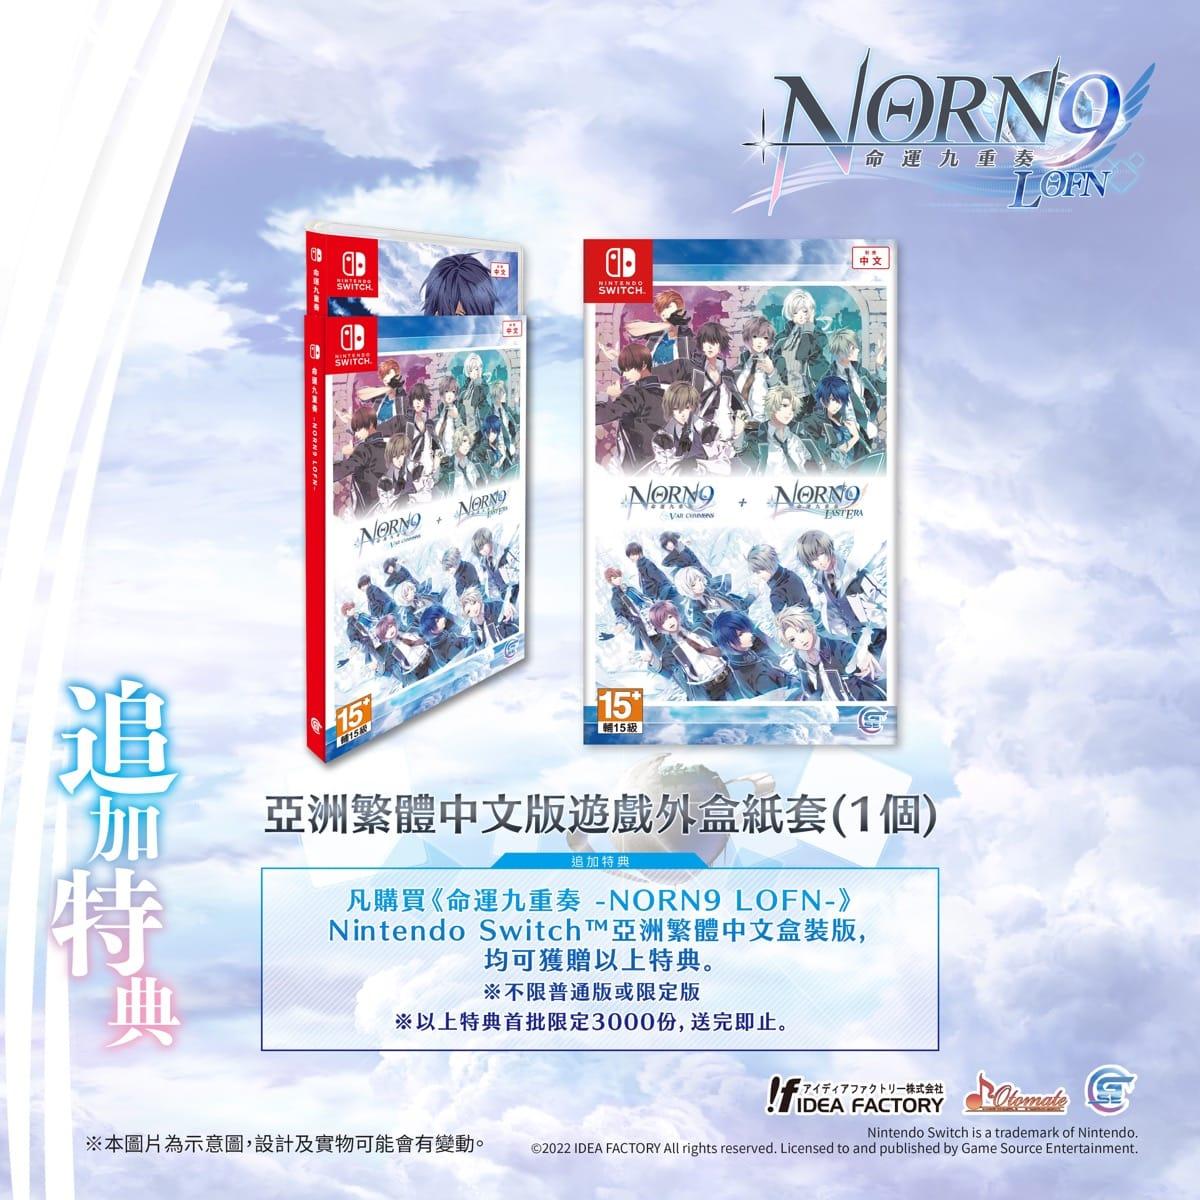 經典乙女遊戲《命運九重奏 –NORN9 LOFN-》 追加特典 PV及發售日情報公開